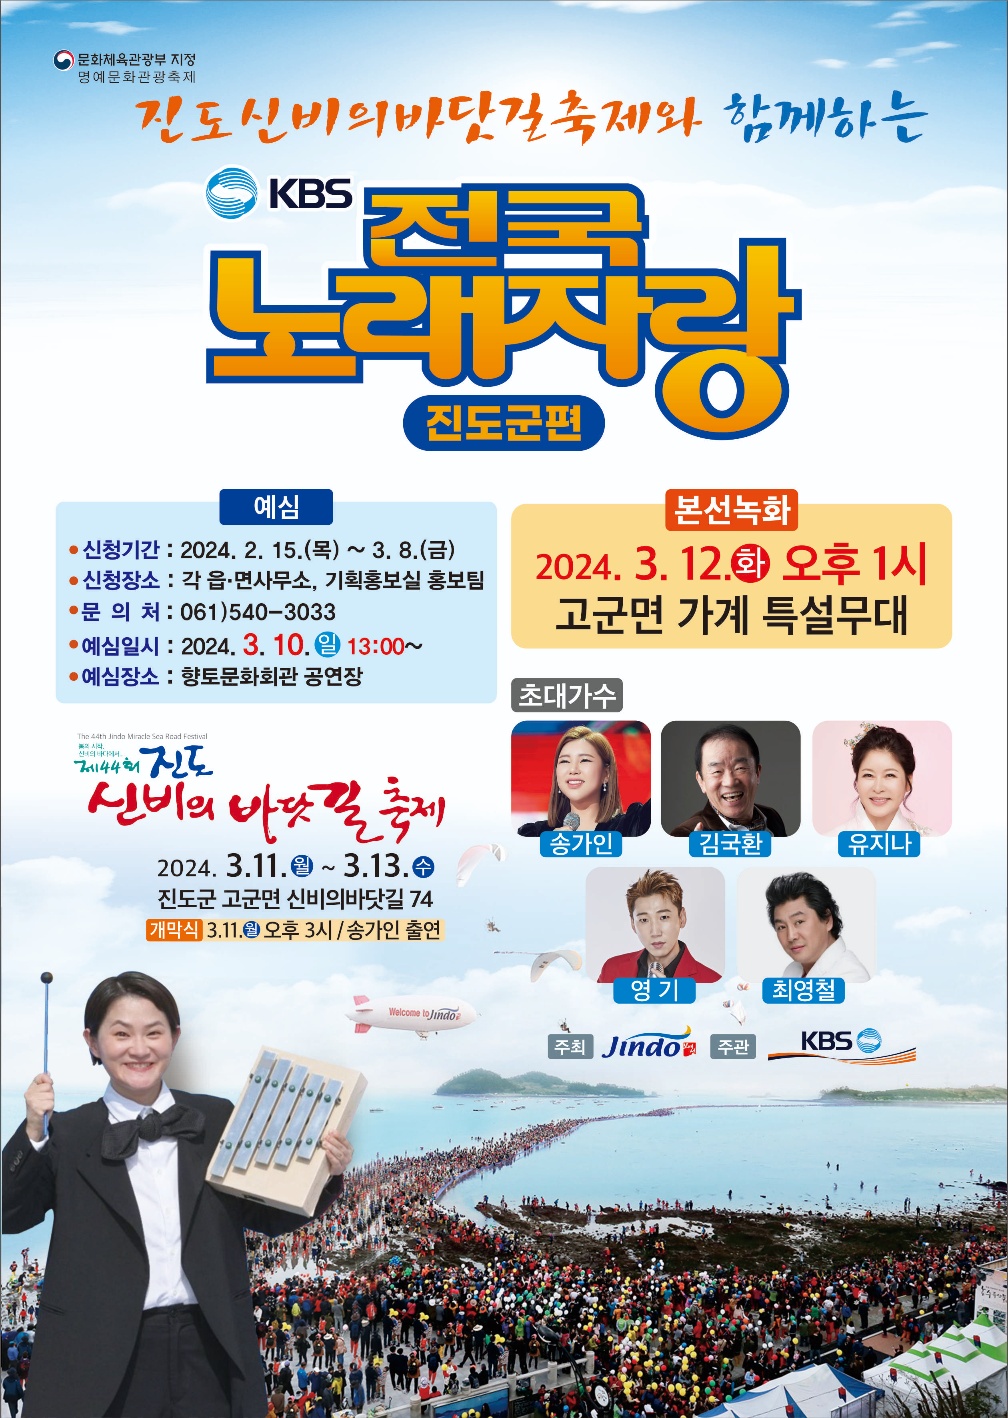 진도 신비의 바닷길 축제와 함께하는 KBS 전국노래자랑 개최 이미지